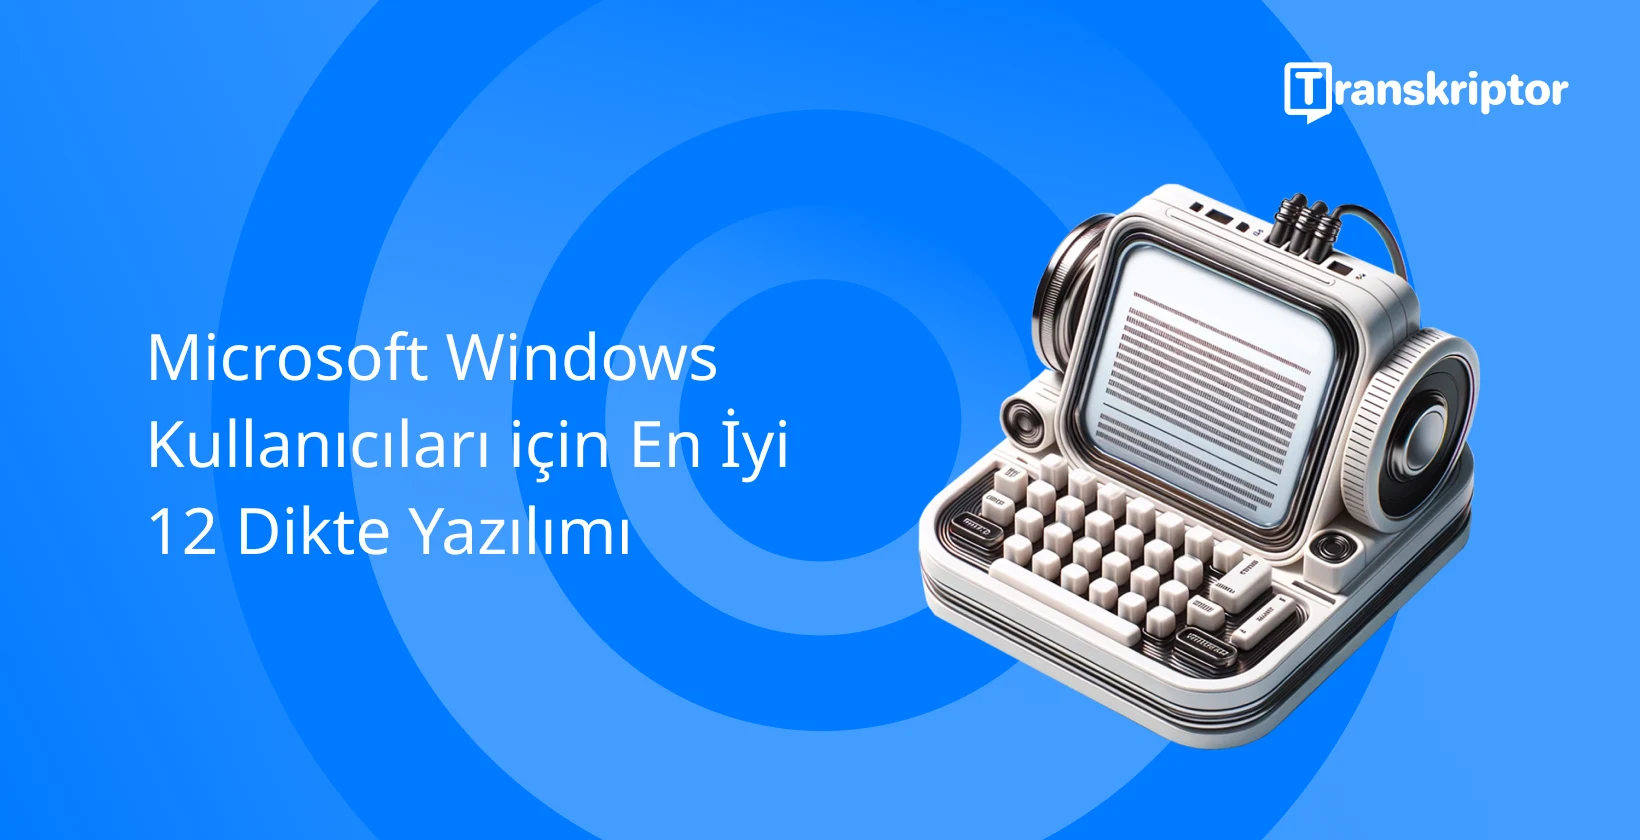 Sesle yazmayı simgeleyen klasik bir mikrofon ve daktilo Windows kullanıcılar için dikte yazılımı.